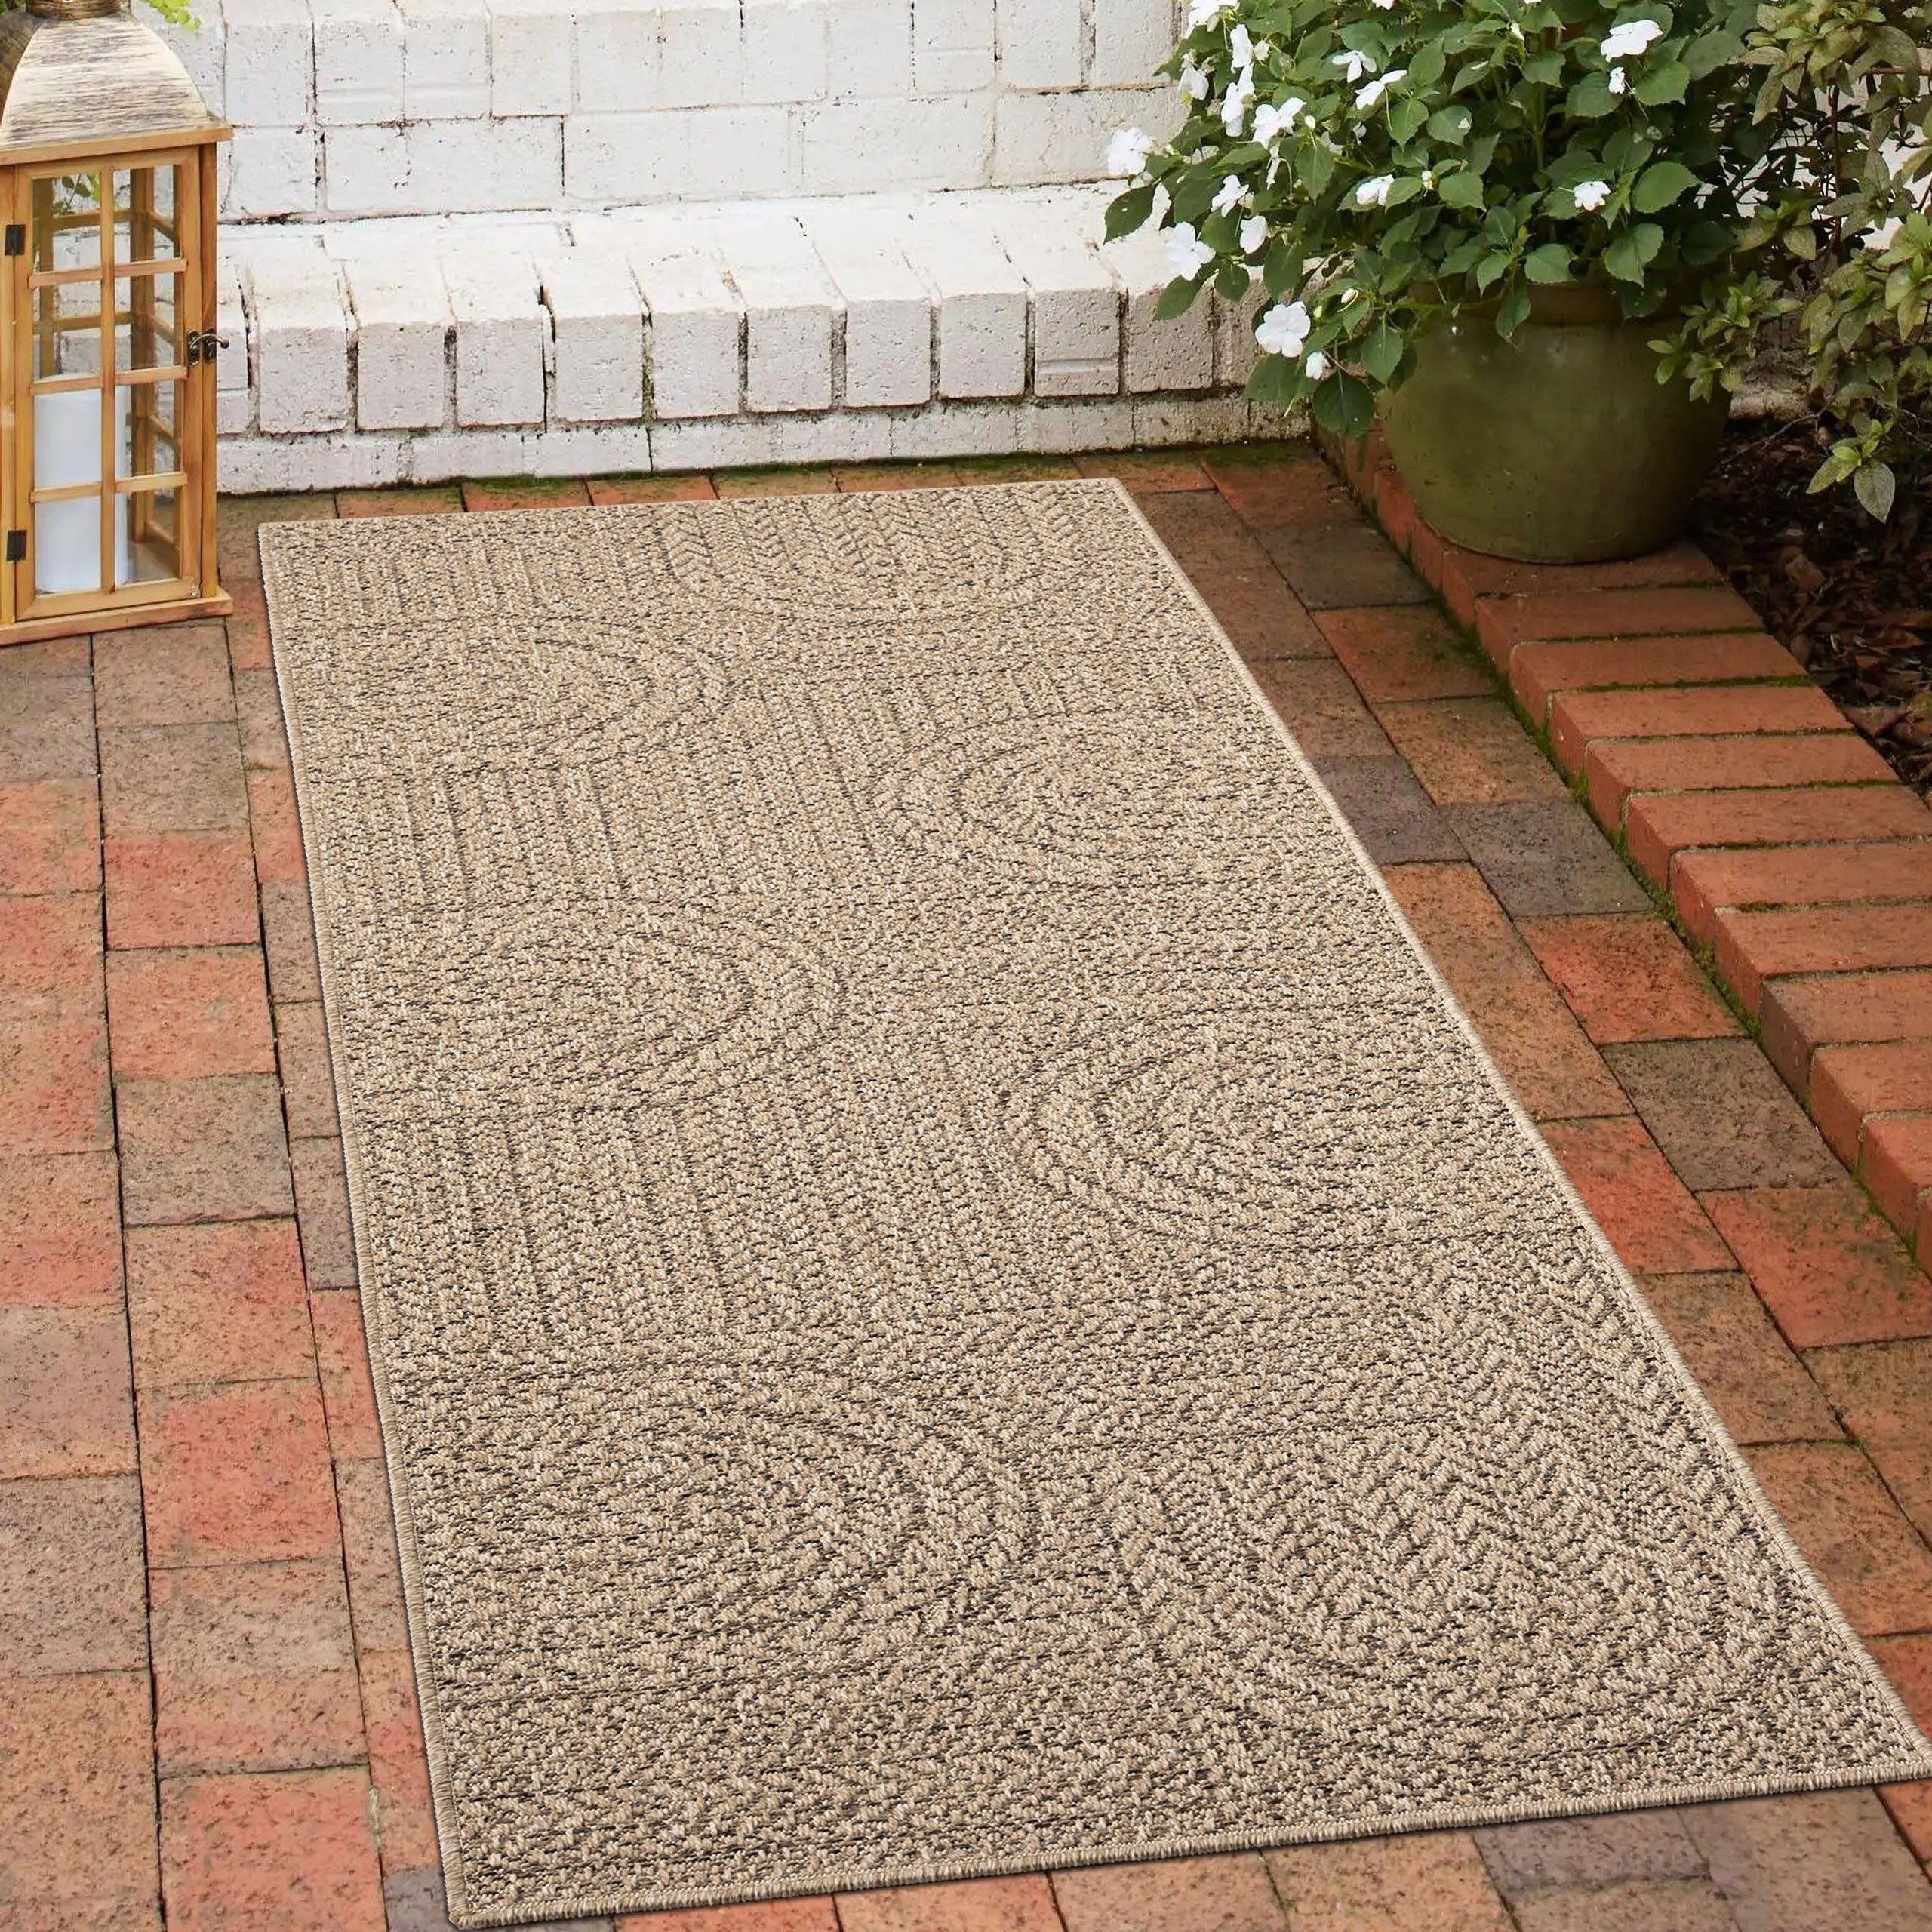 Outdoorteppich In- & Outdoorteppich im Jute-Look in natürlichen Farben, Carpetia, rechteckig, Höhe: 5 mm